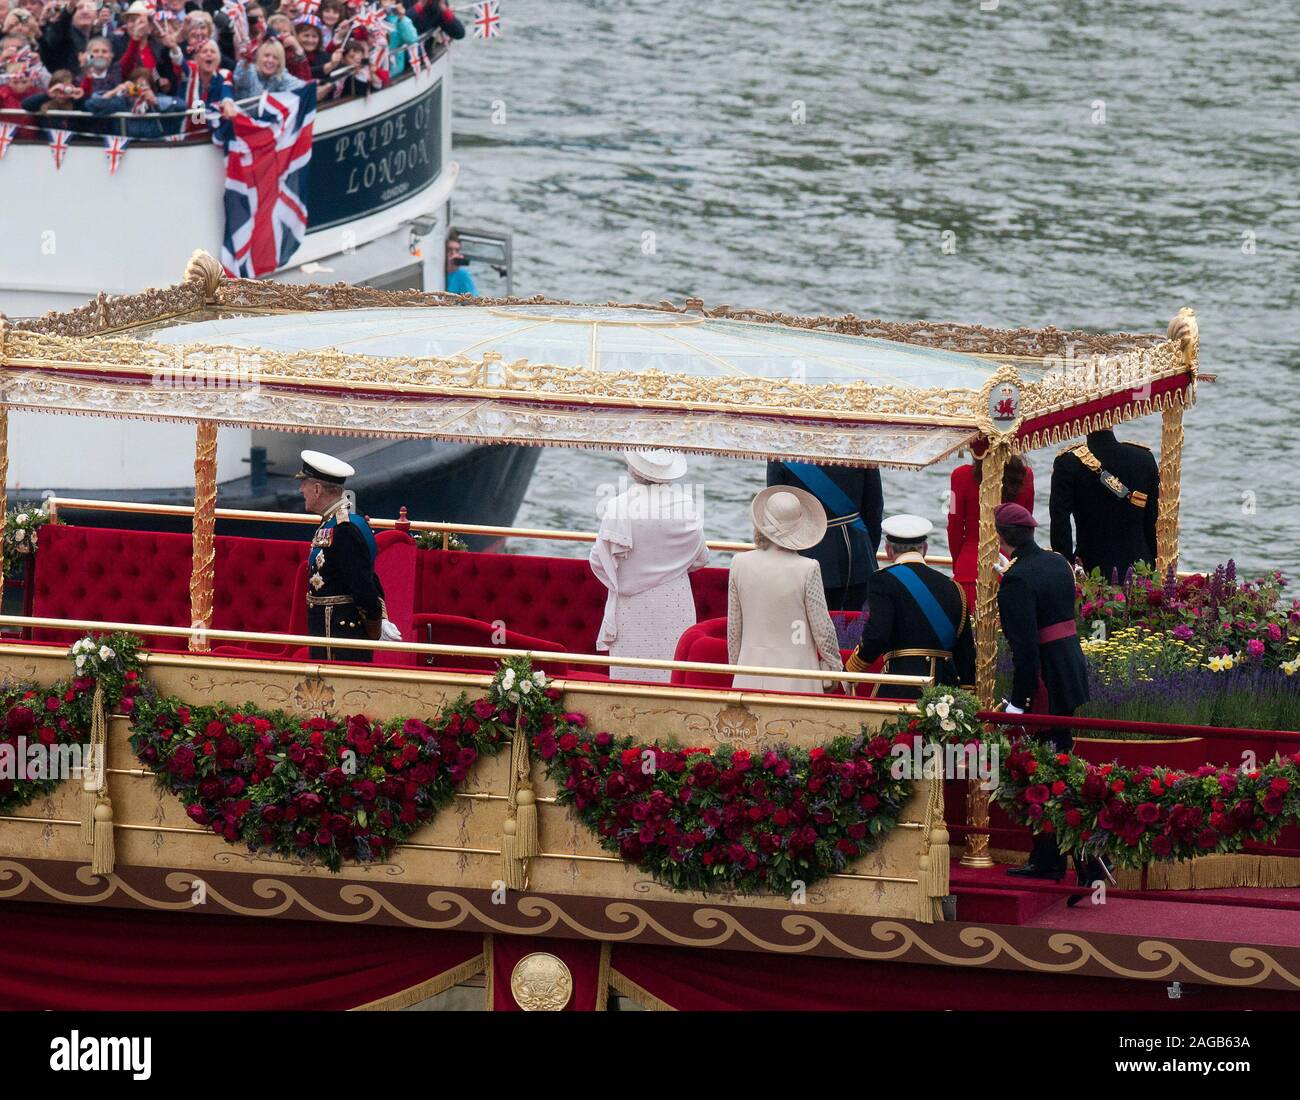 Un millier de petites embarcations rejoindre la famille royale pour le concours sur la Tamise en 2012 pour célébrer le Jubilé de diamant d'Elizabeth II étant le 60e anniversaire de l'accession de Sa Majesté la Reine le 6 février 1952. Banque D'Images